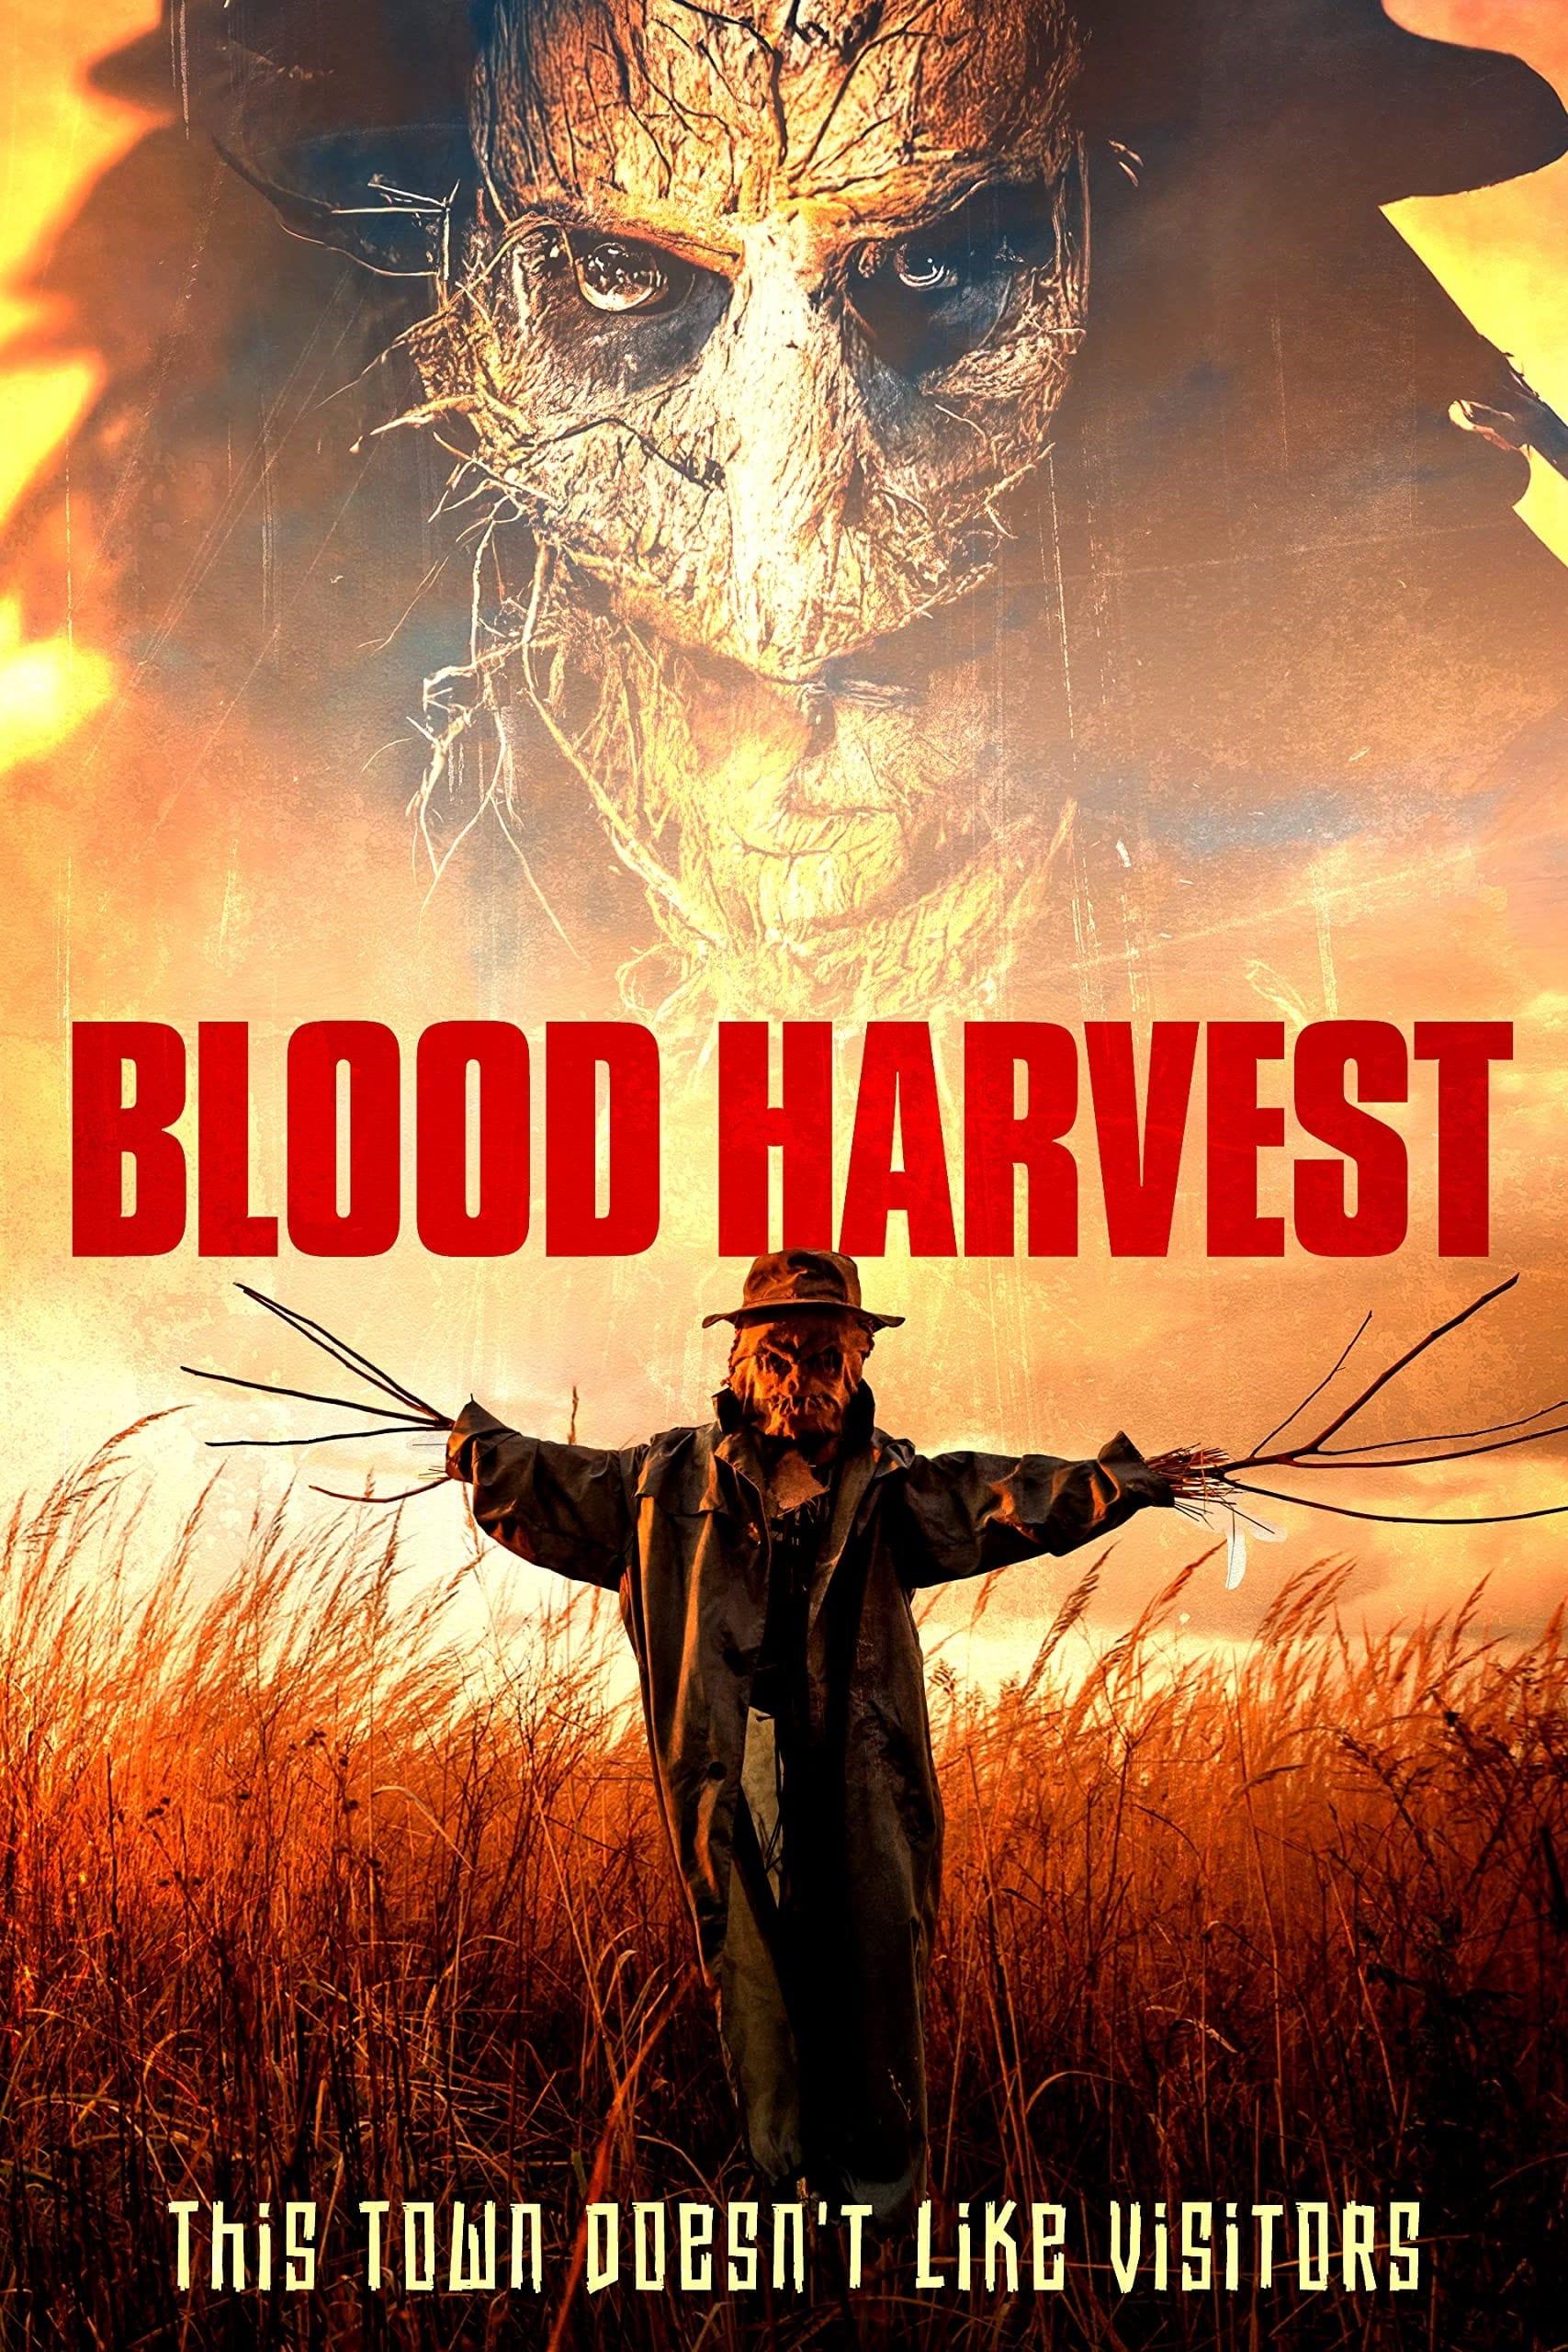 Blood Harvest poster